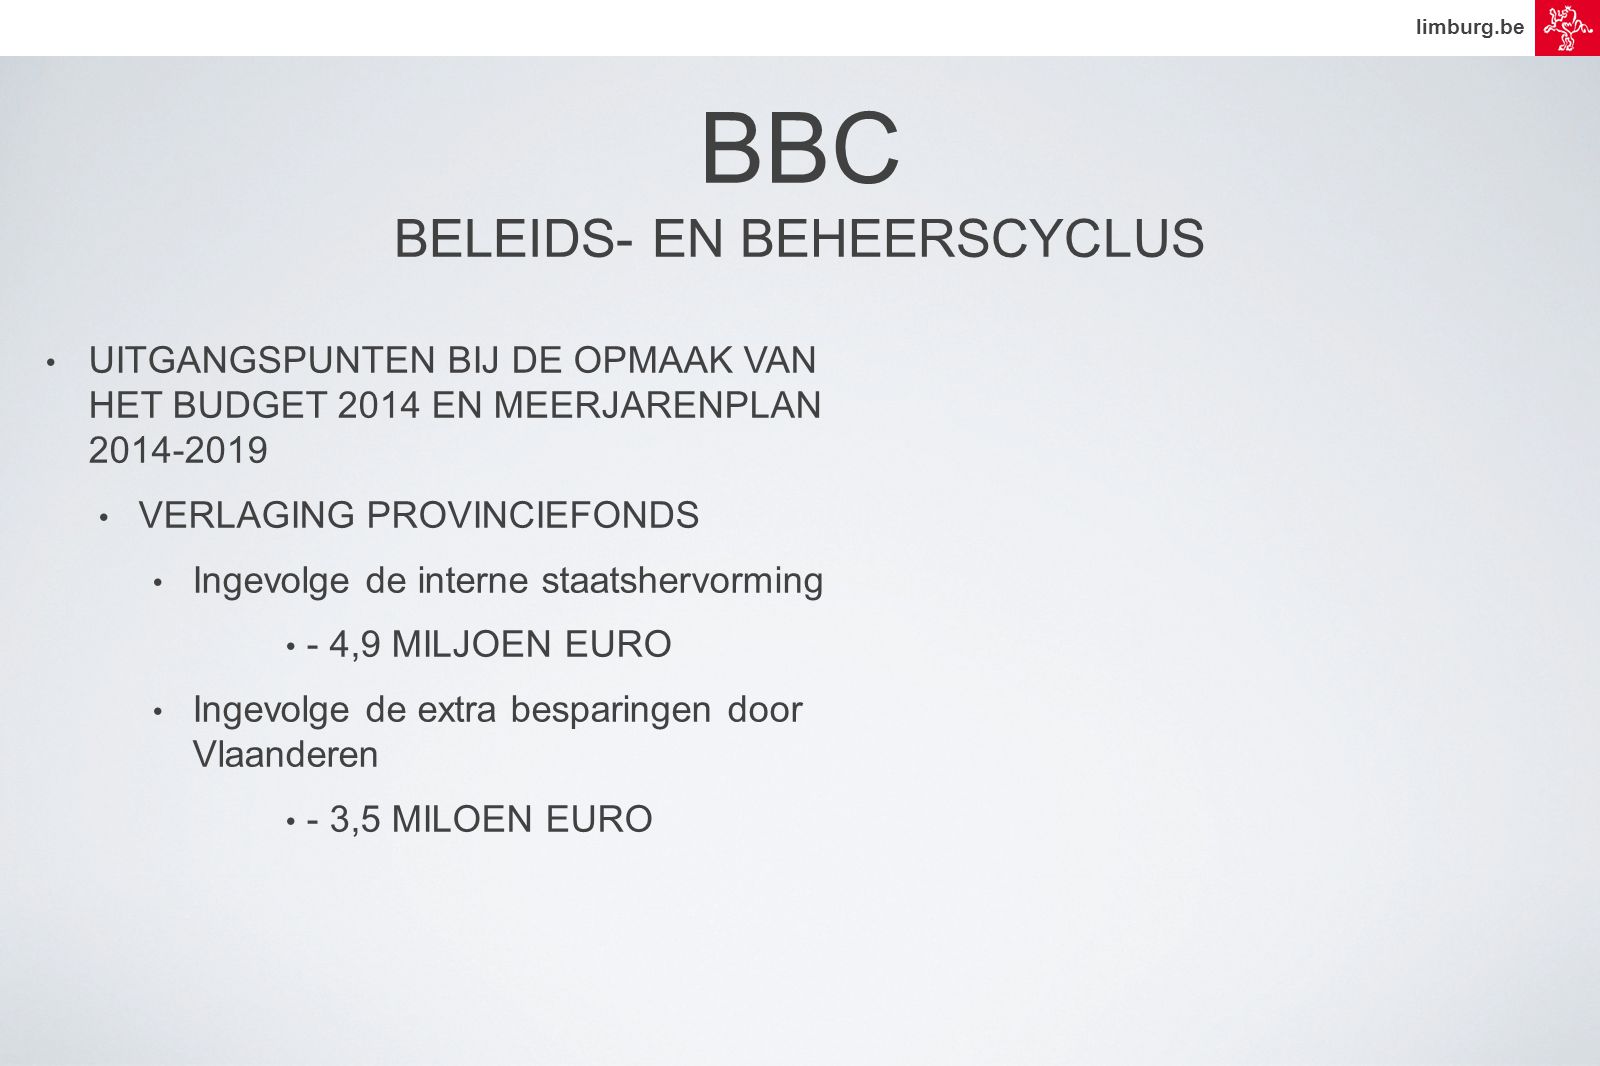 limburg.be • UITGANGSPUNTEN BIJ DE OPMAAK VAN HET BUDGET 2014 EN MEERJARENPLAN • VERLAGING PROVINCIEFONDS • Ingevolge de interne staatshervorming • - 4,9 MILJOEN EURO • Ingevolge de extra besparingen door Vlaanderen • - 3,5 MILOEN EURO BBC BELEIDS- EN BEHEERSCYCLUS